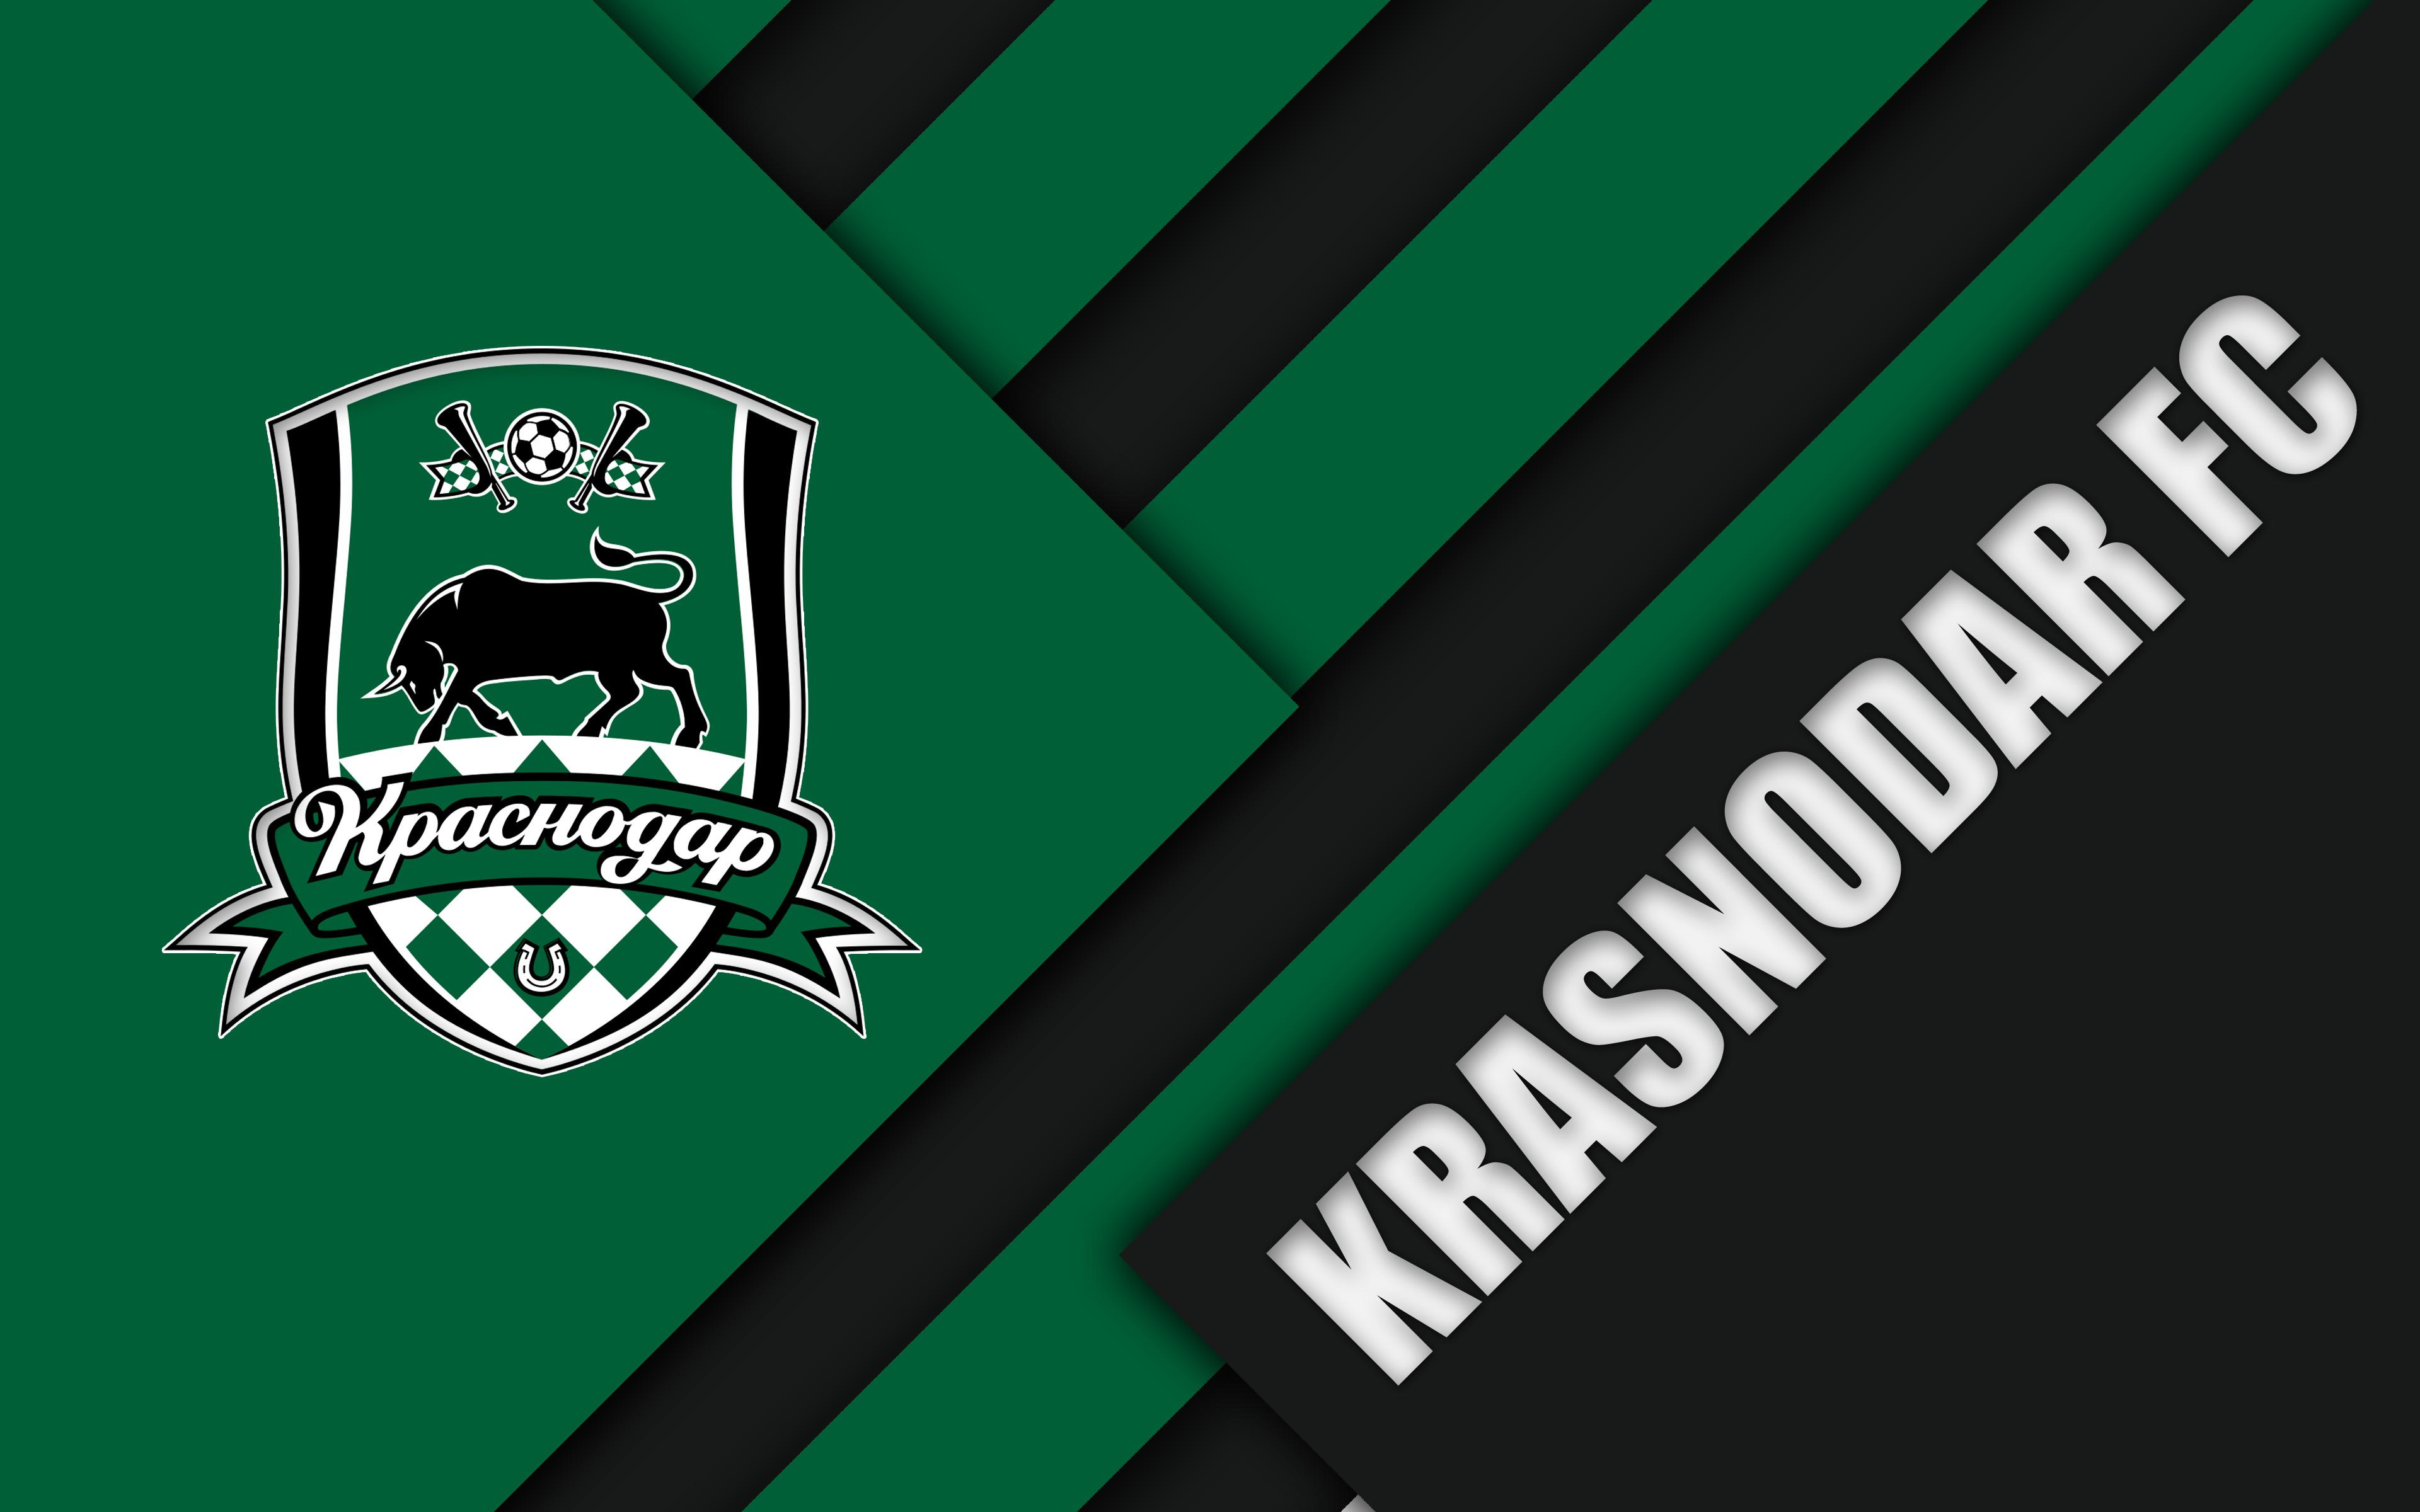 Soccer, Logo, Emblem, FC Krasnodar wallpaper and background